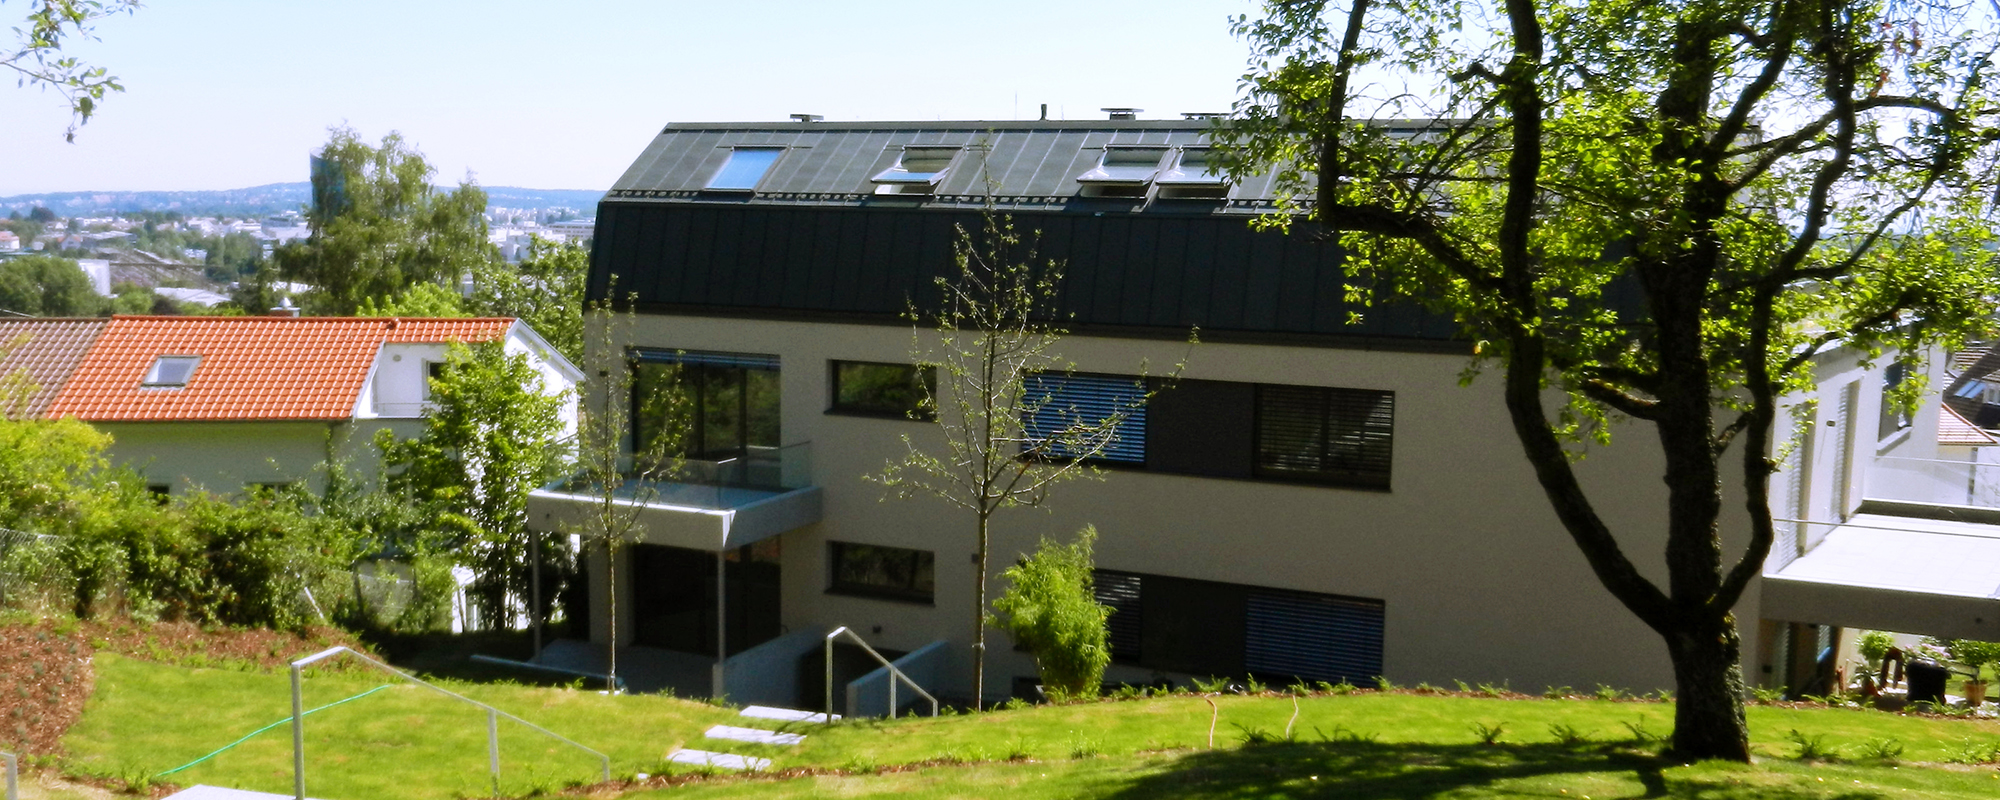 Referenz PlanQuadrat | Ansicht des exklusiven Mehrfamilienhauses in Im Haldenau, Stuttgart